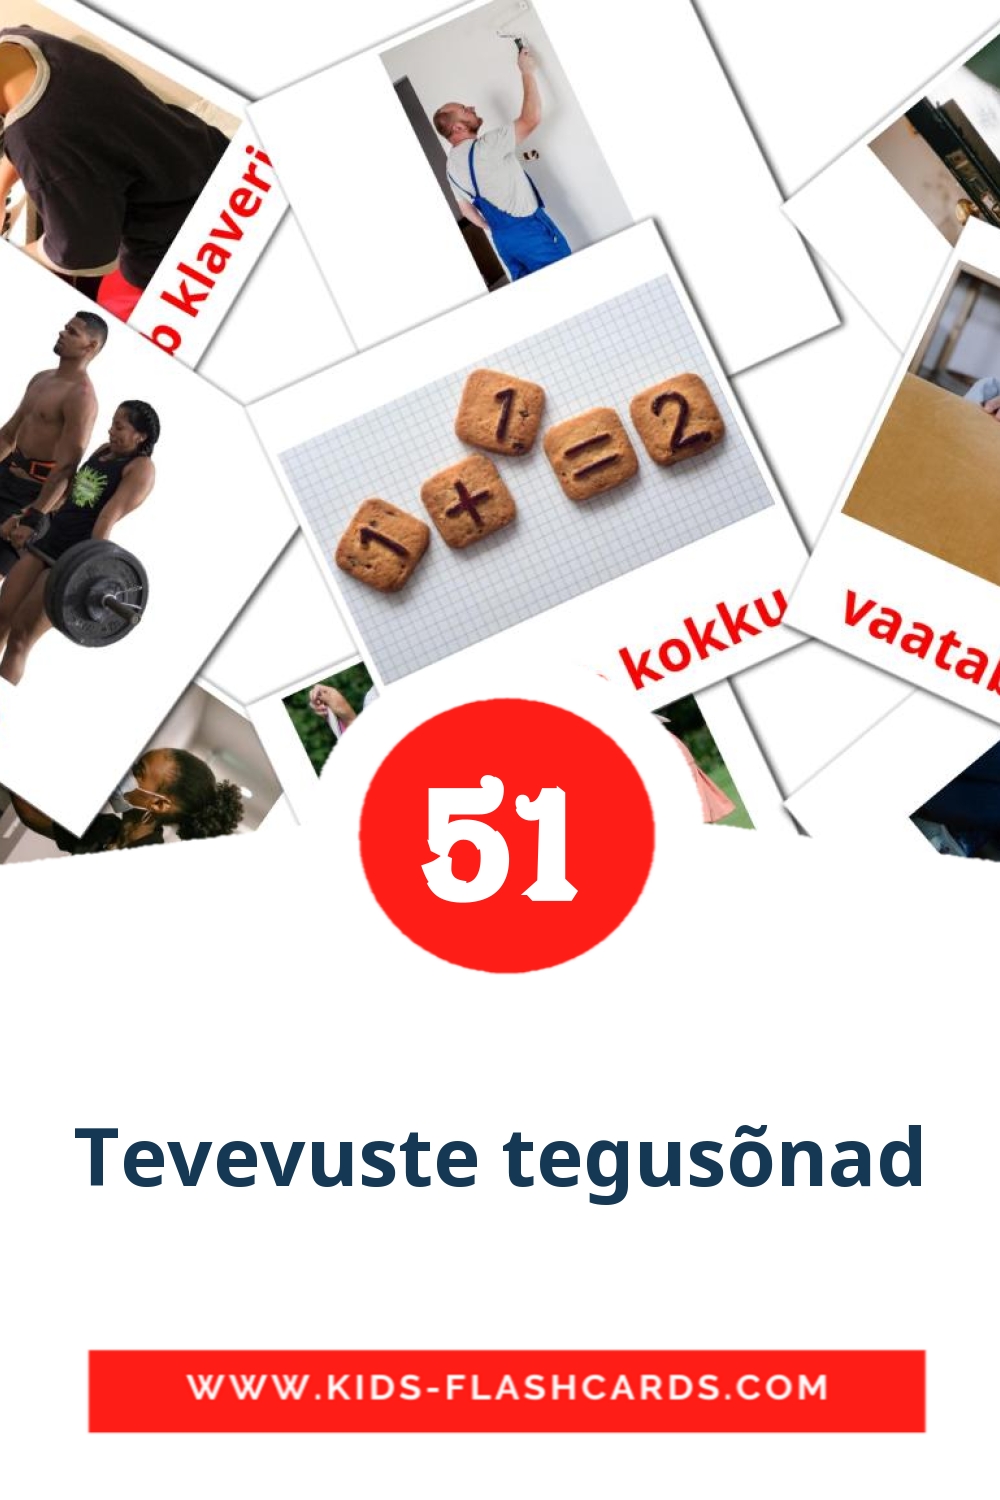 54 cartes illustrées de Tevevuste tegusõnad pour la maternelle en estonien